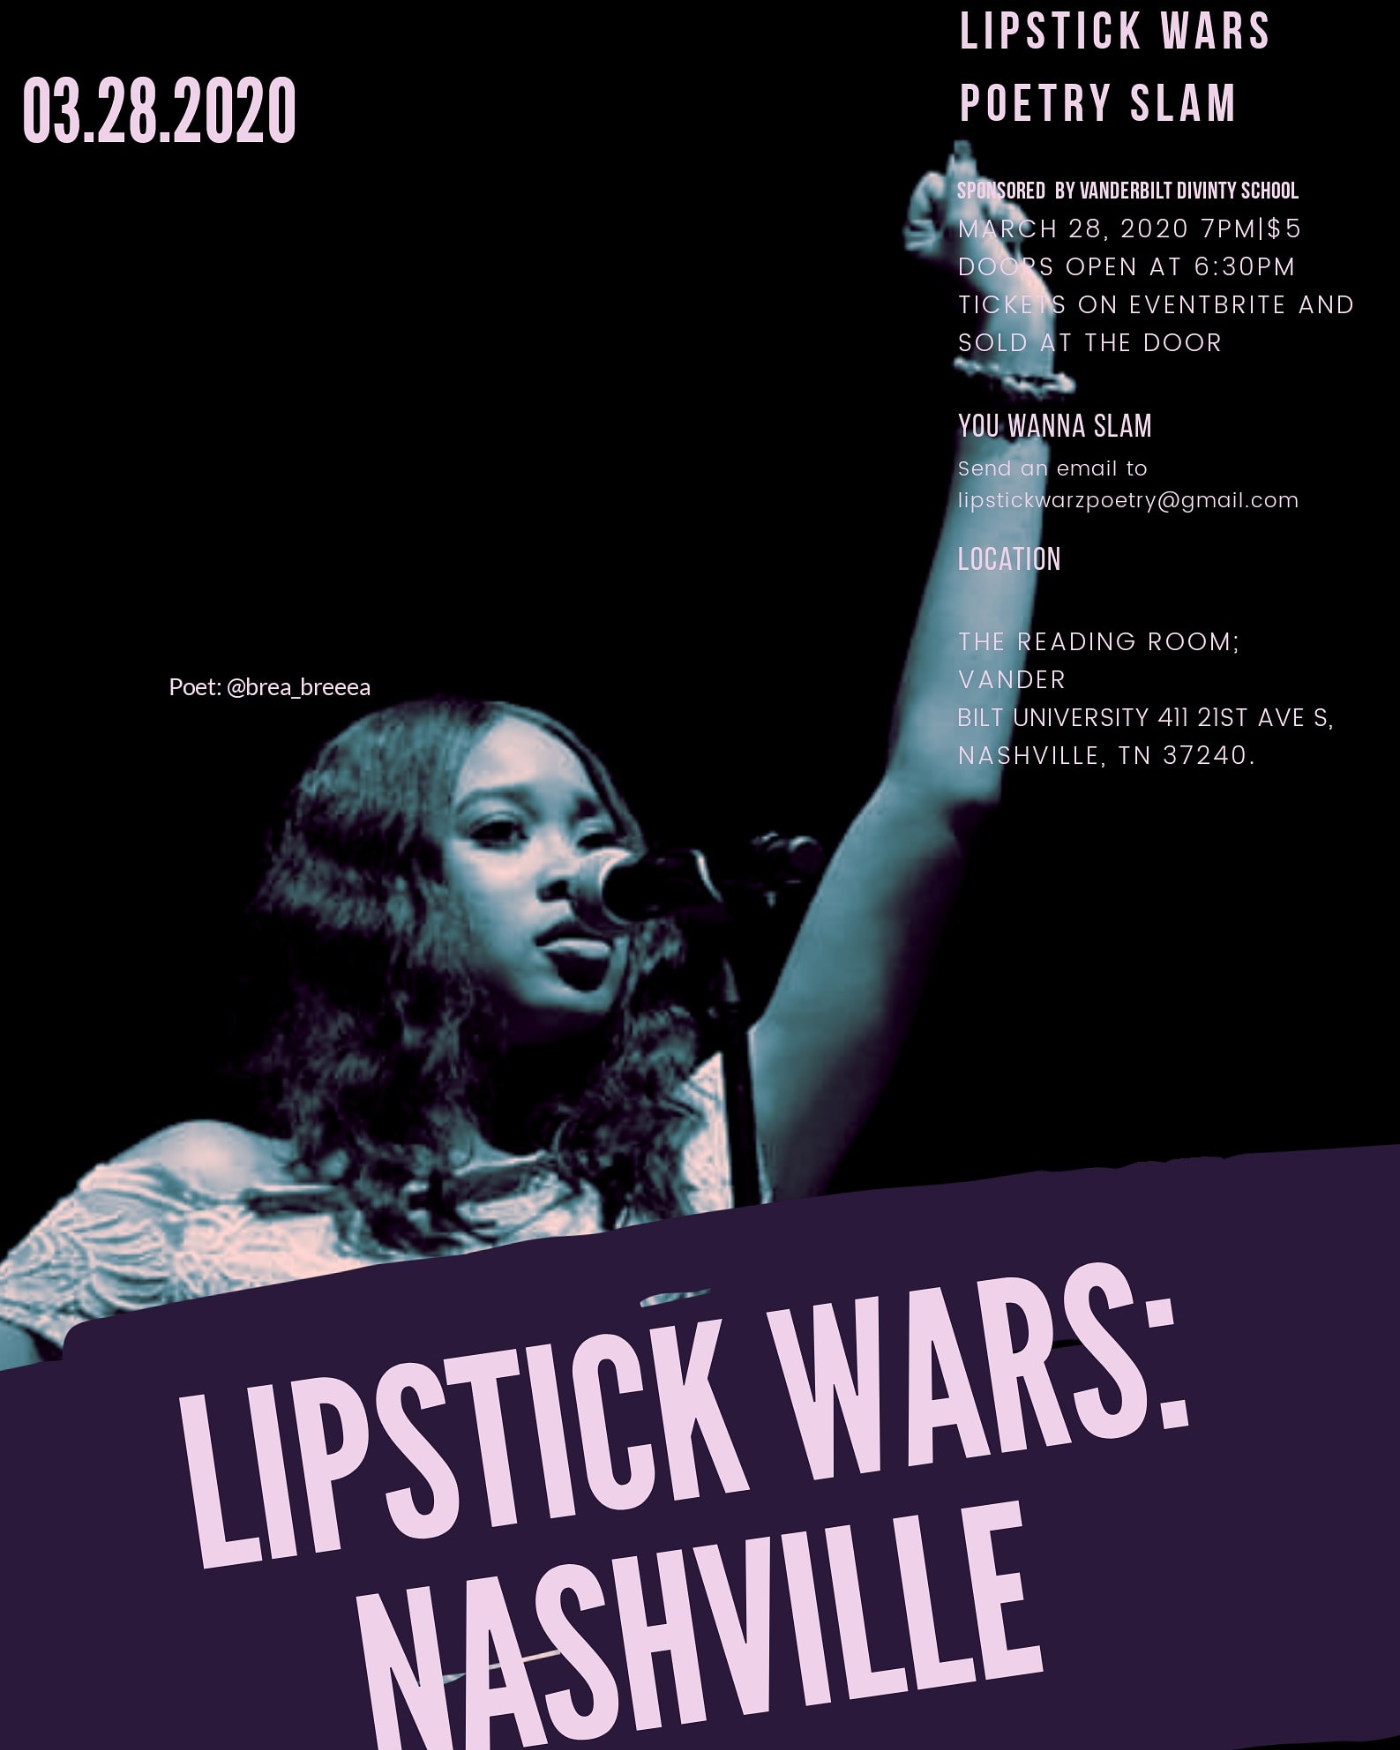 Lipstick Wars Nashville